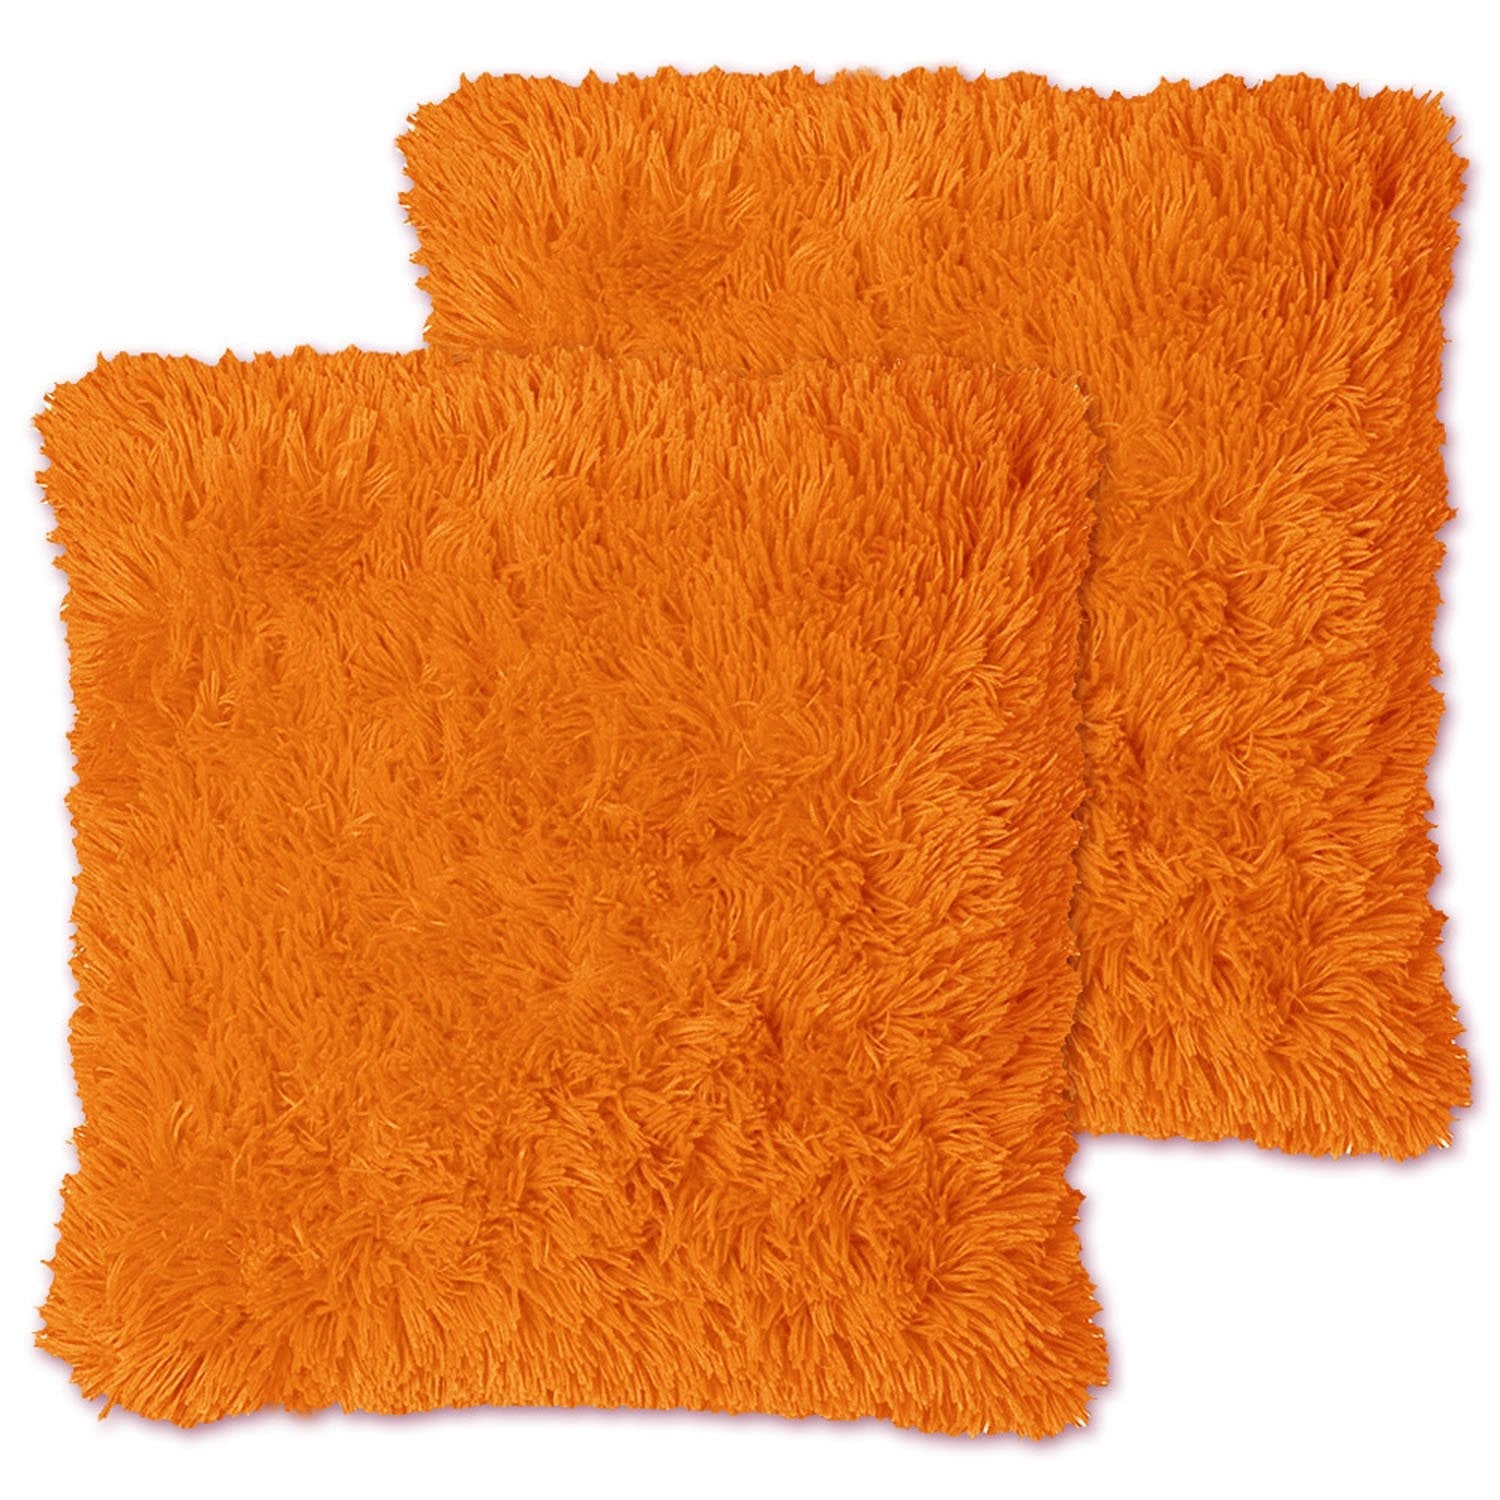 Decorative Plush Throw Pillows Orange - Top